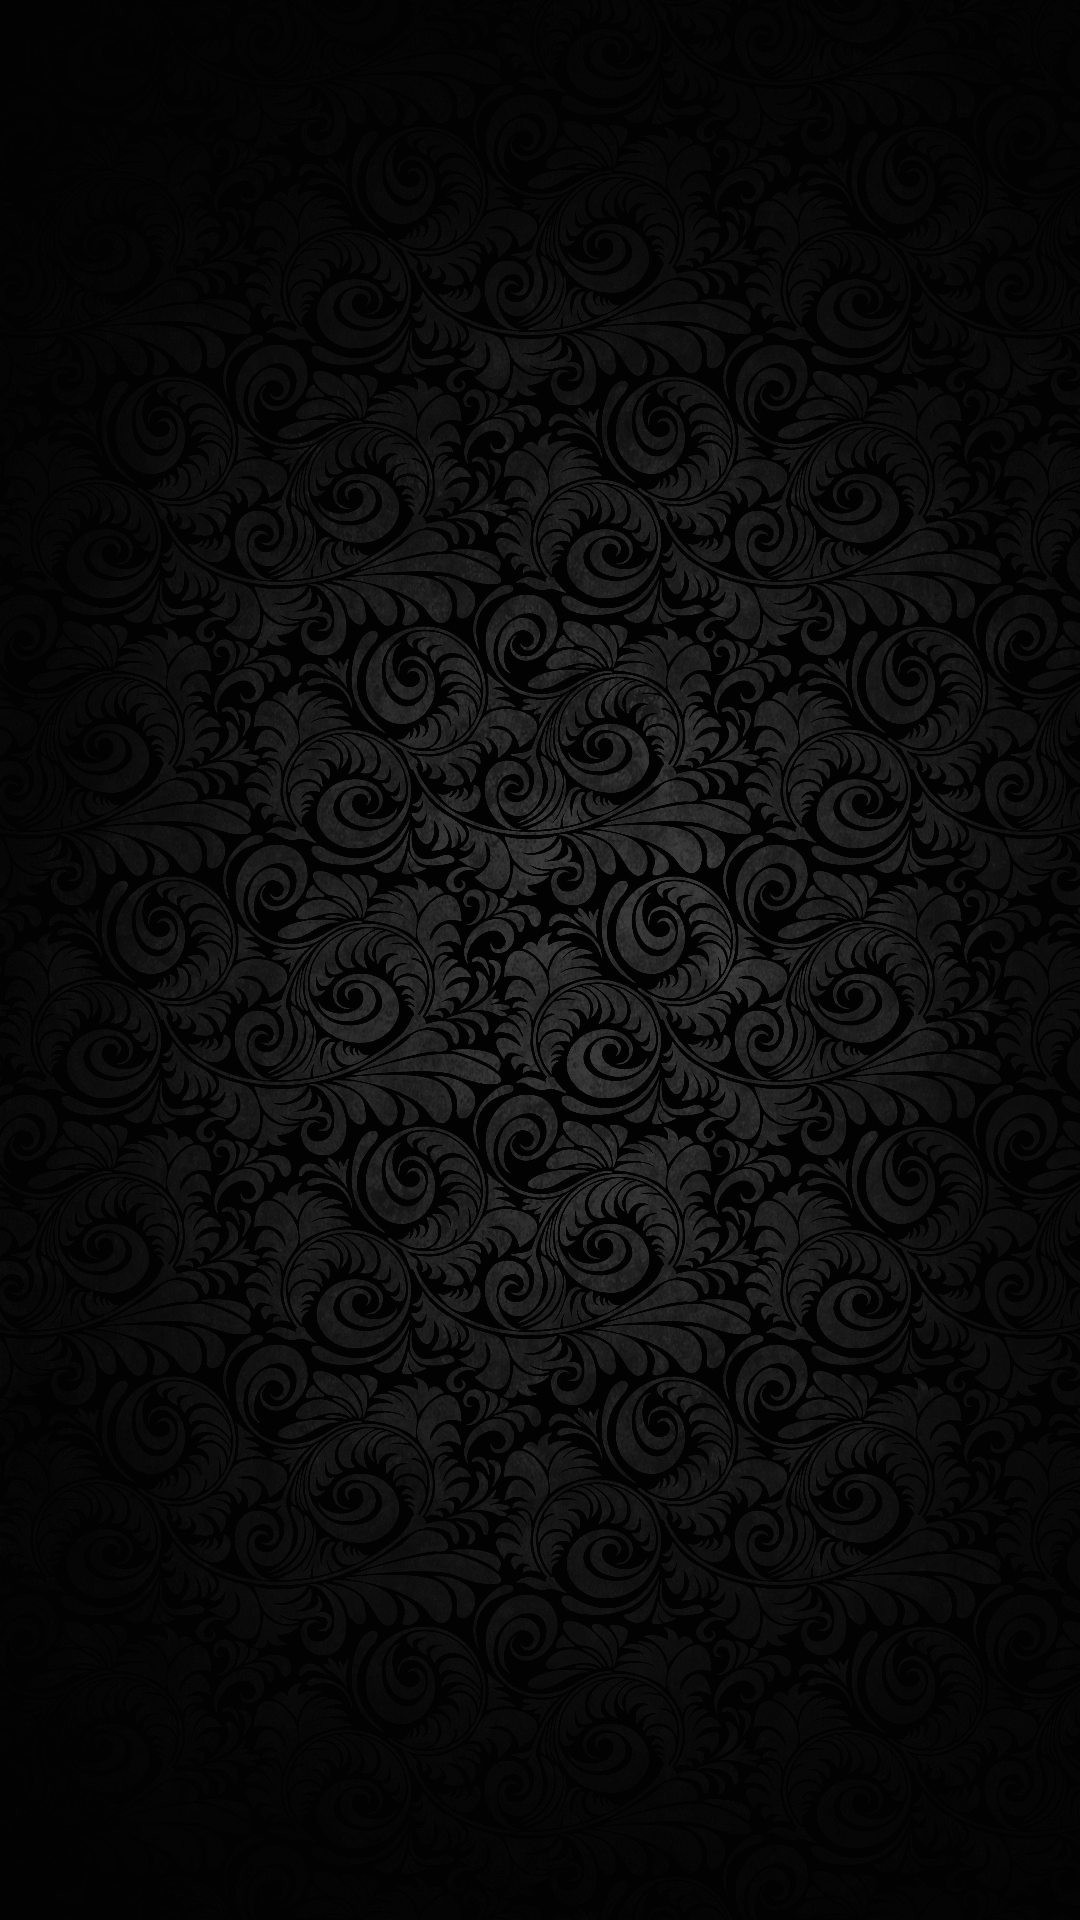 1080x1920  Wallpaper full hd 1080 x 1920 smartphone dark elegant